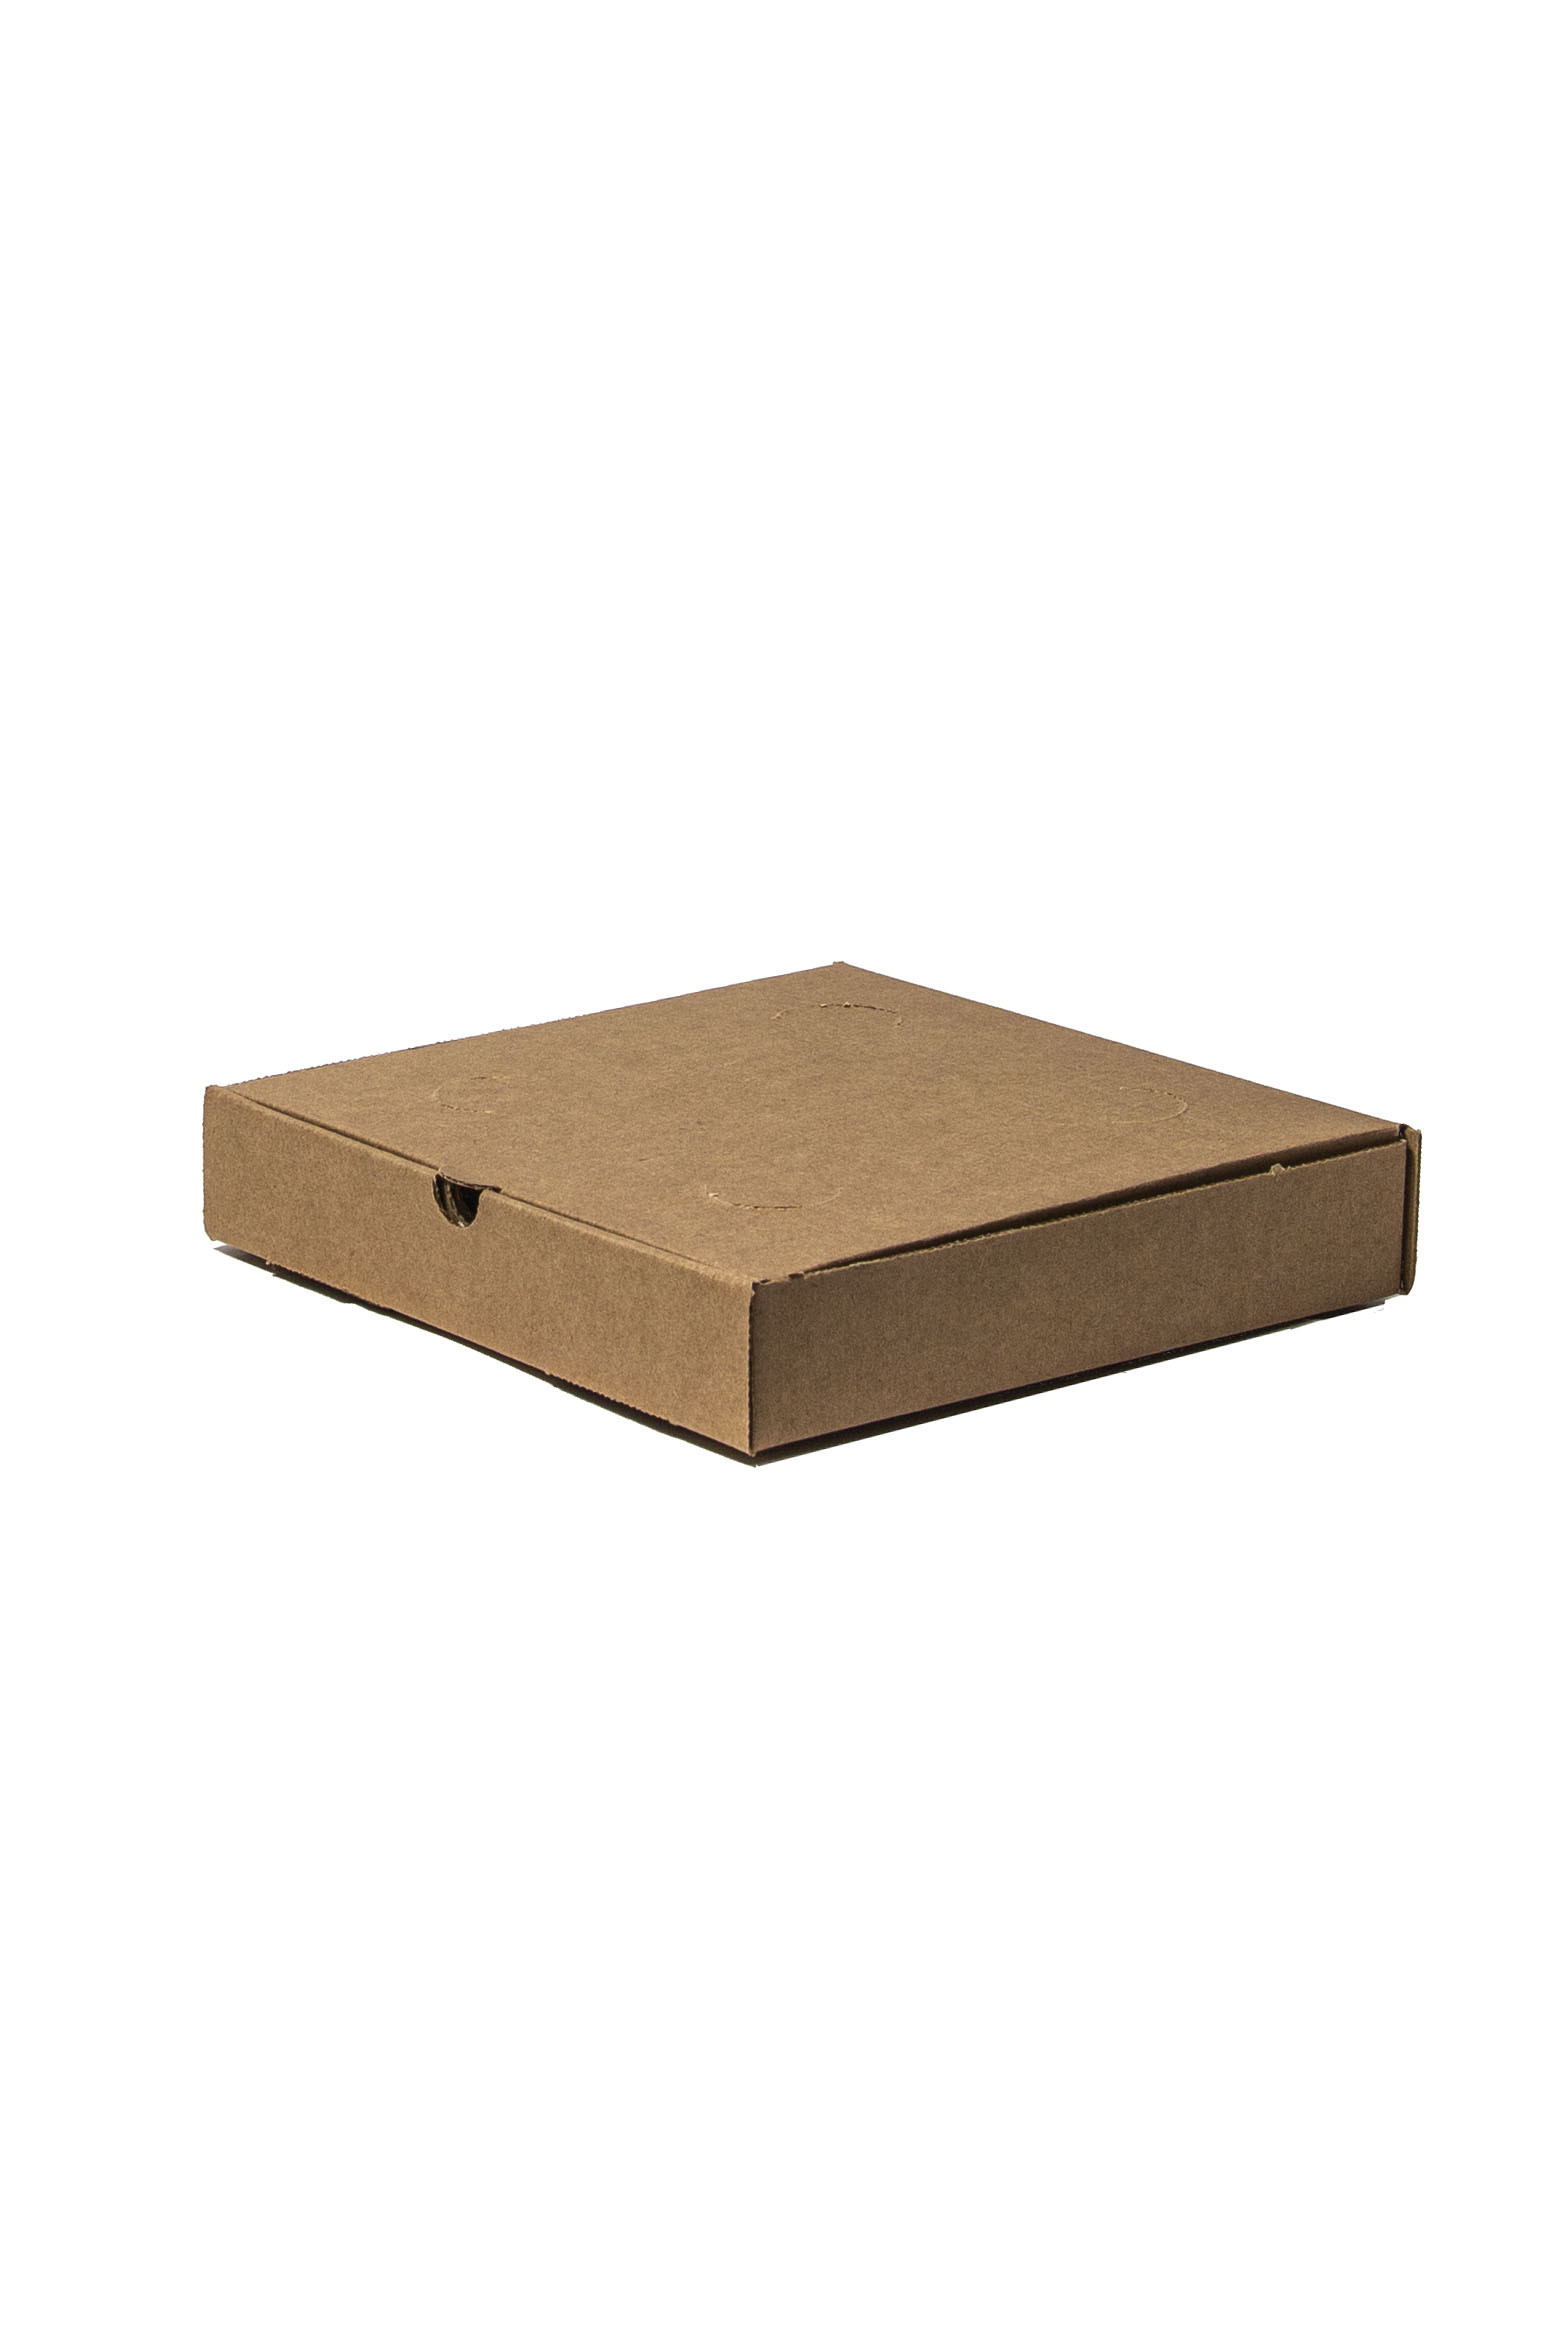 Cajas para deliverys, mudanzas, - Yaguarete Cartones